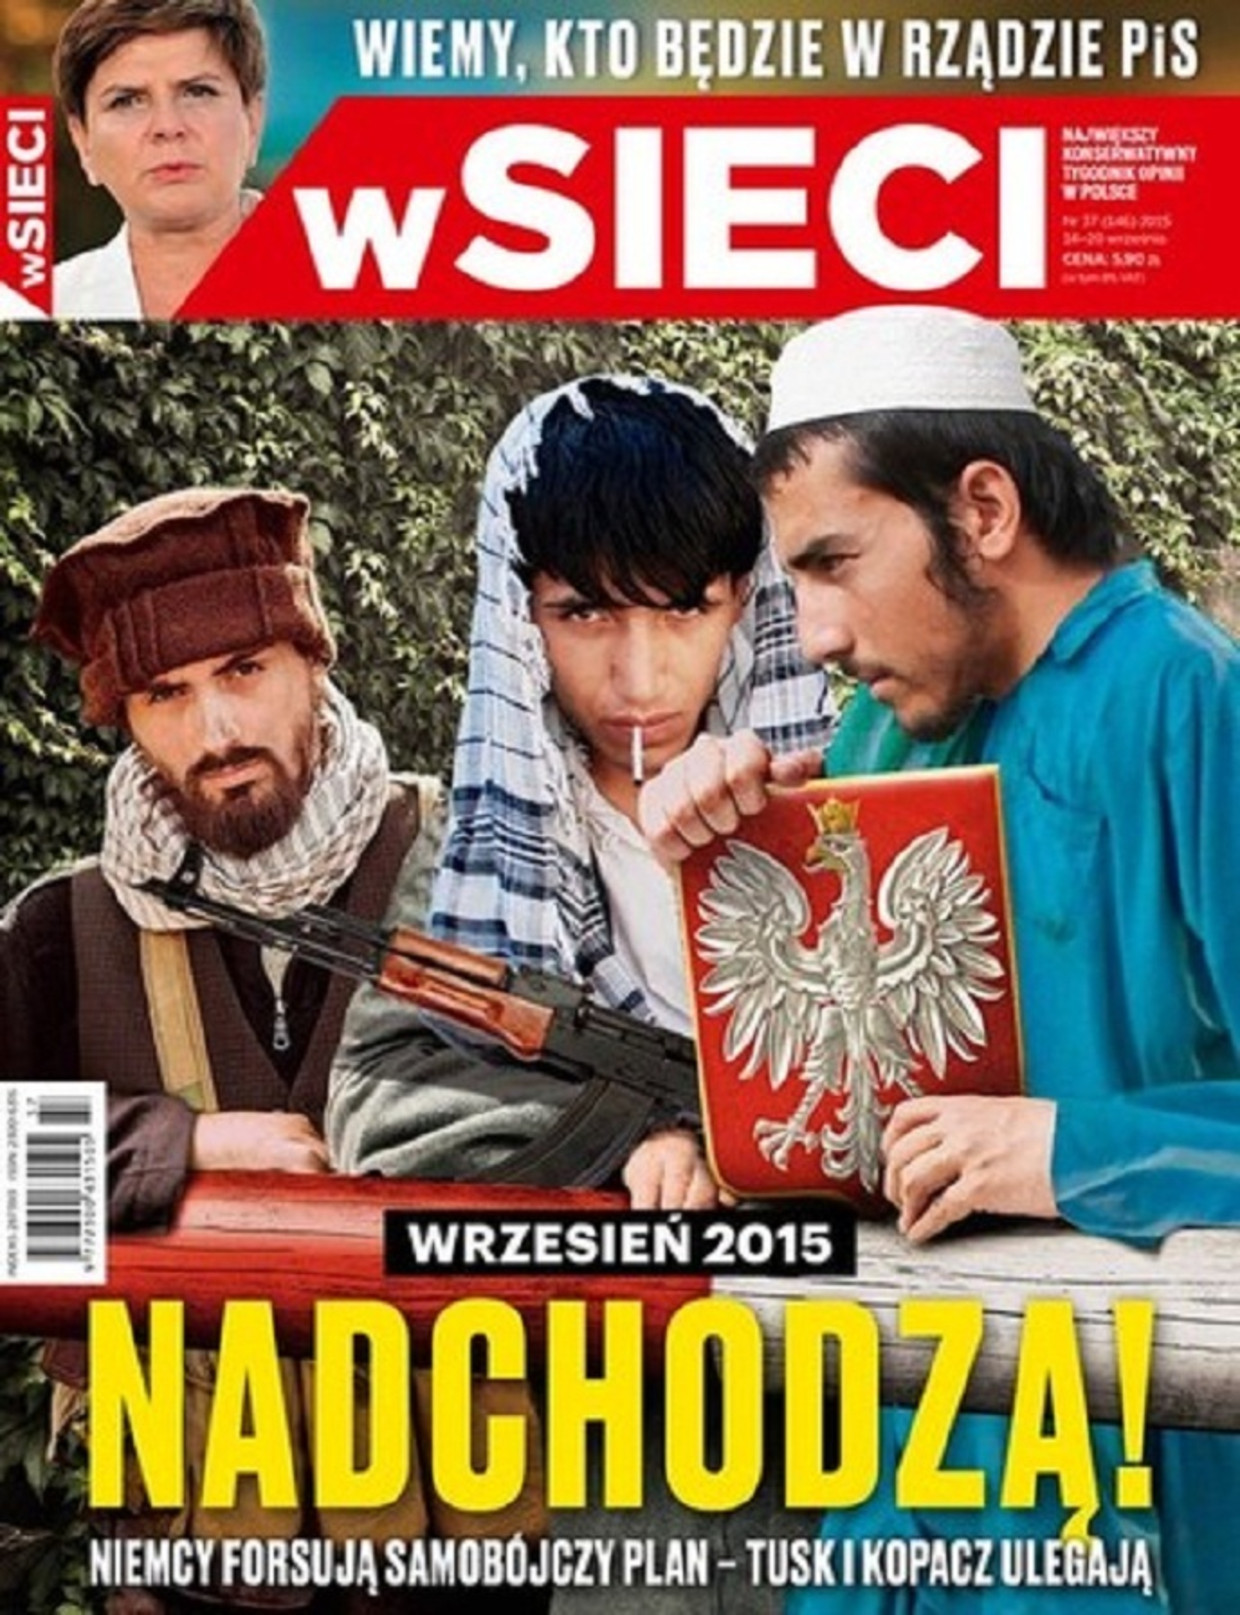 Het in Polen gerespecteerde opinieblad wSieci. De journalisten die er werken noemen zich 'onverschrokken'. Op de cover van dit nummer staat: 'September 2015. Ze komen eraan!' 'Ze' zijn de radicale moslims. Beeld  